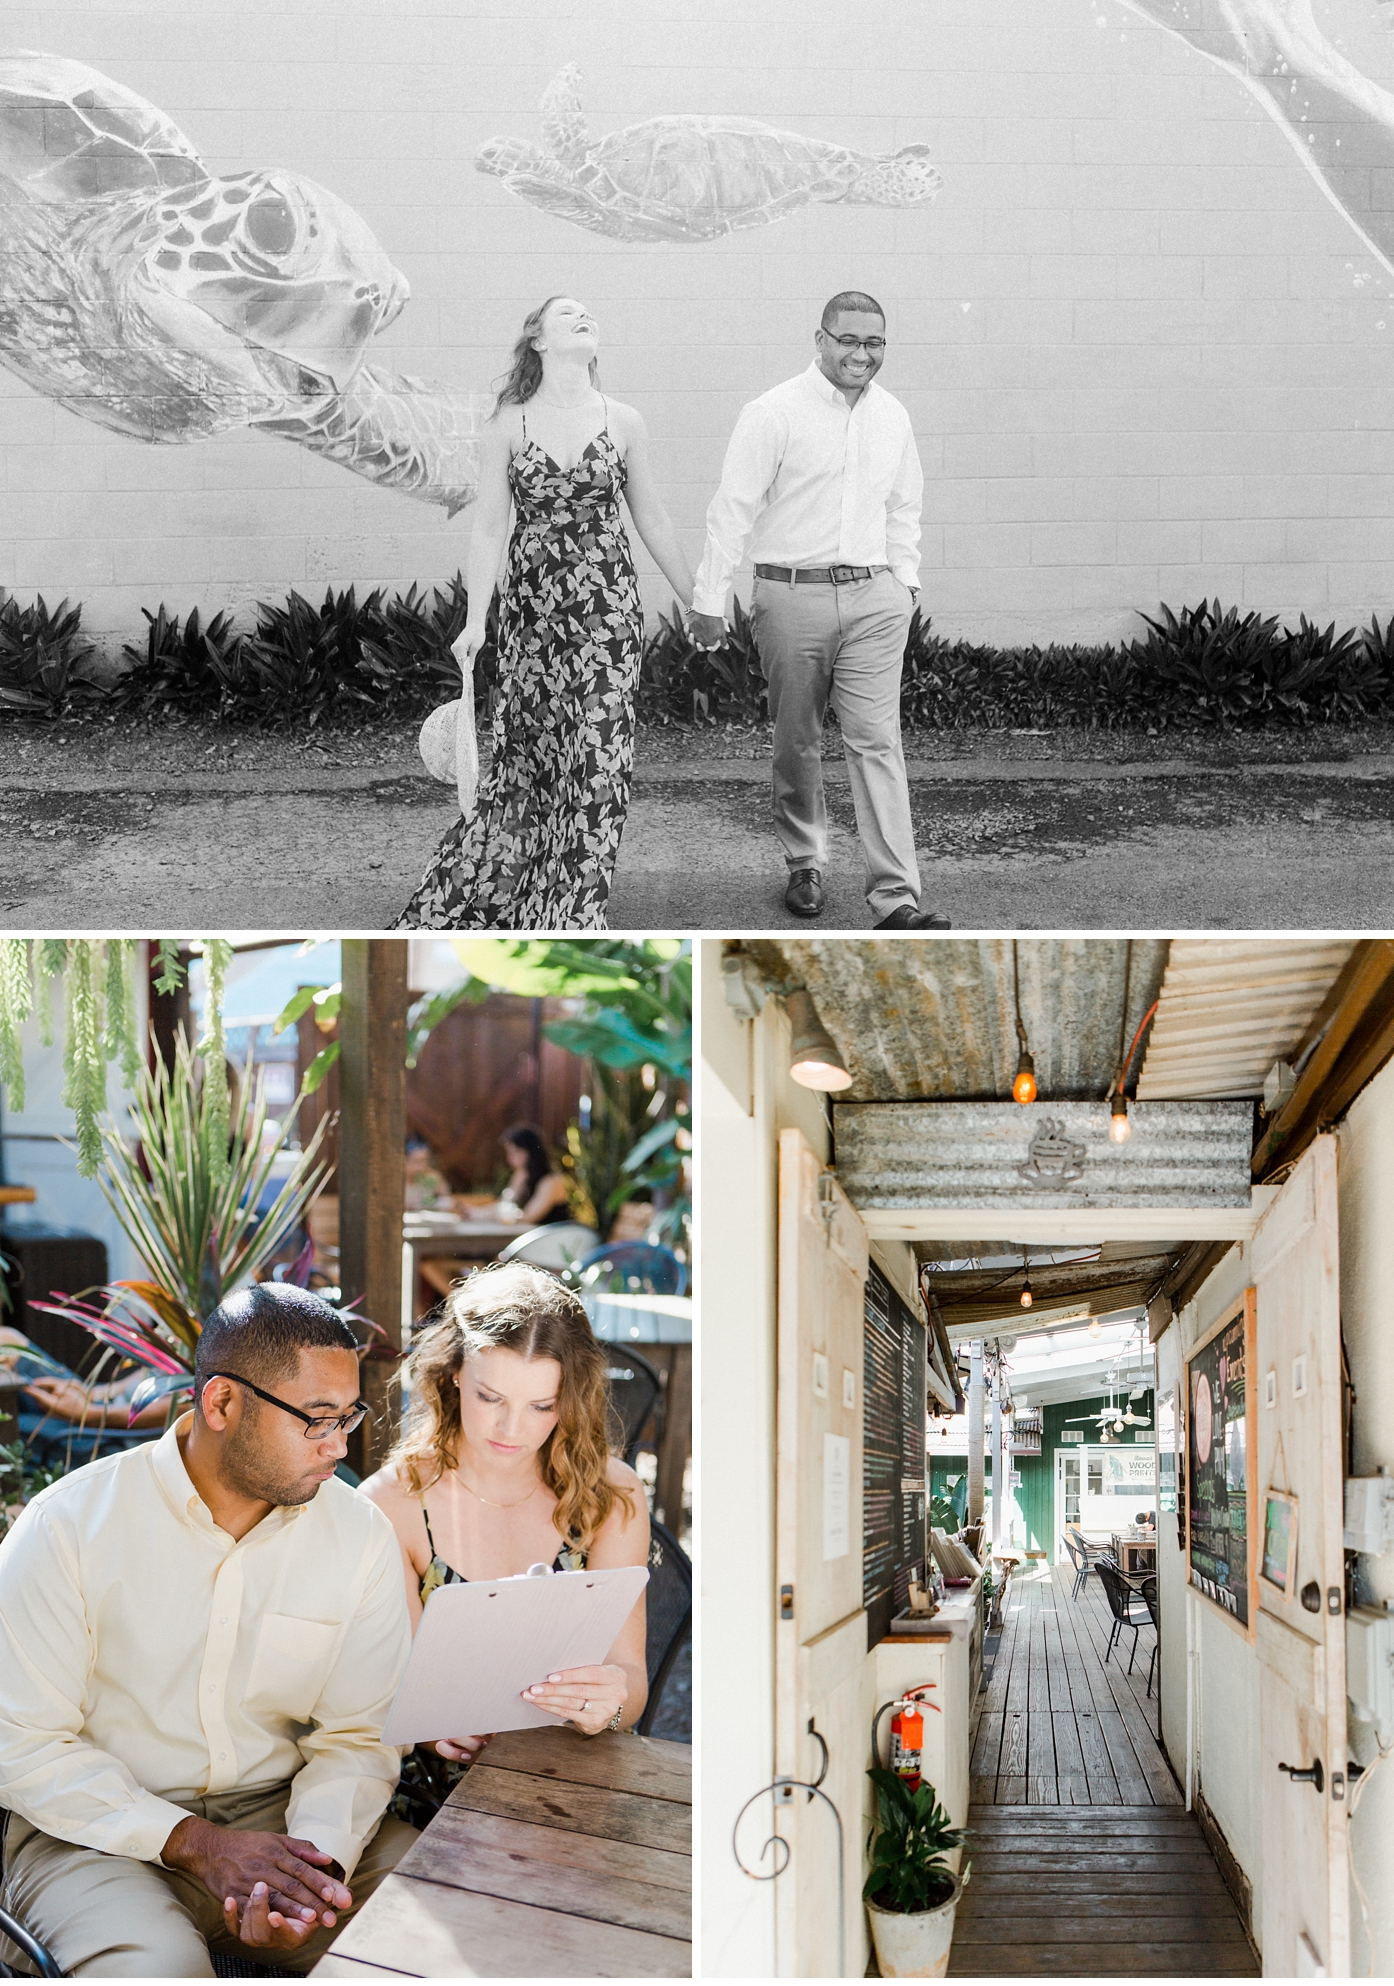 Maui Engagement and Wedding Photographer